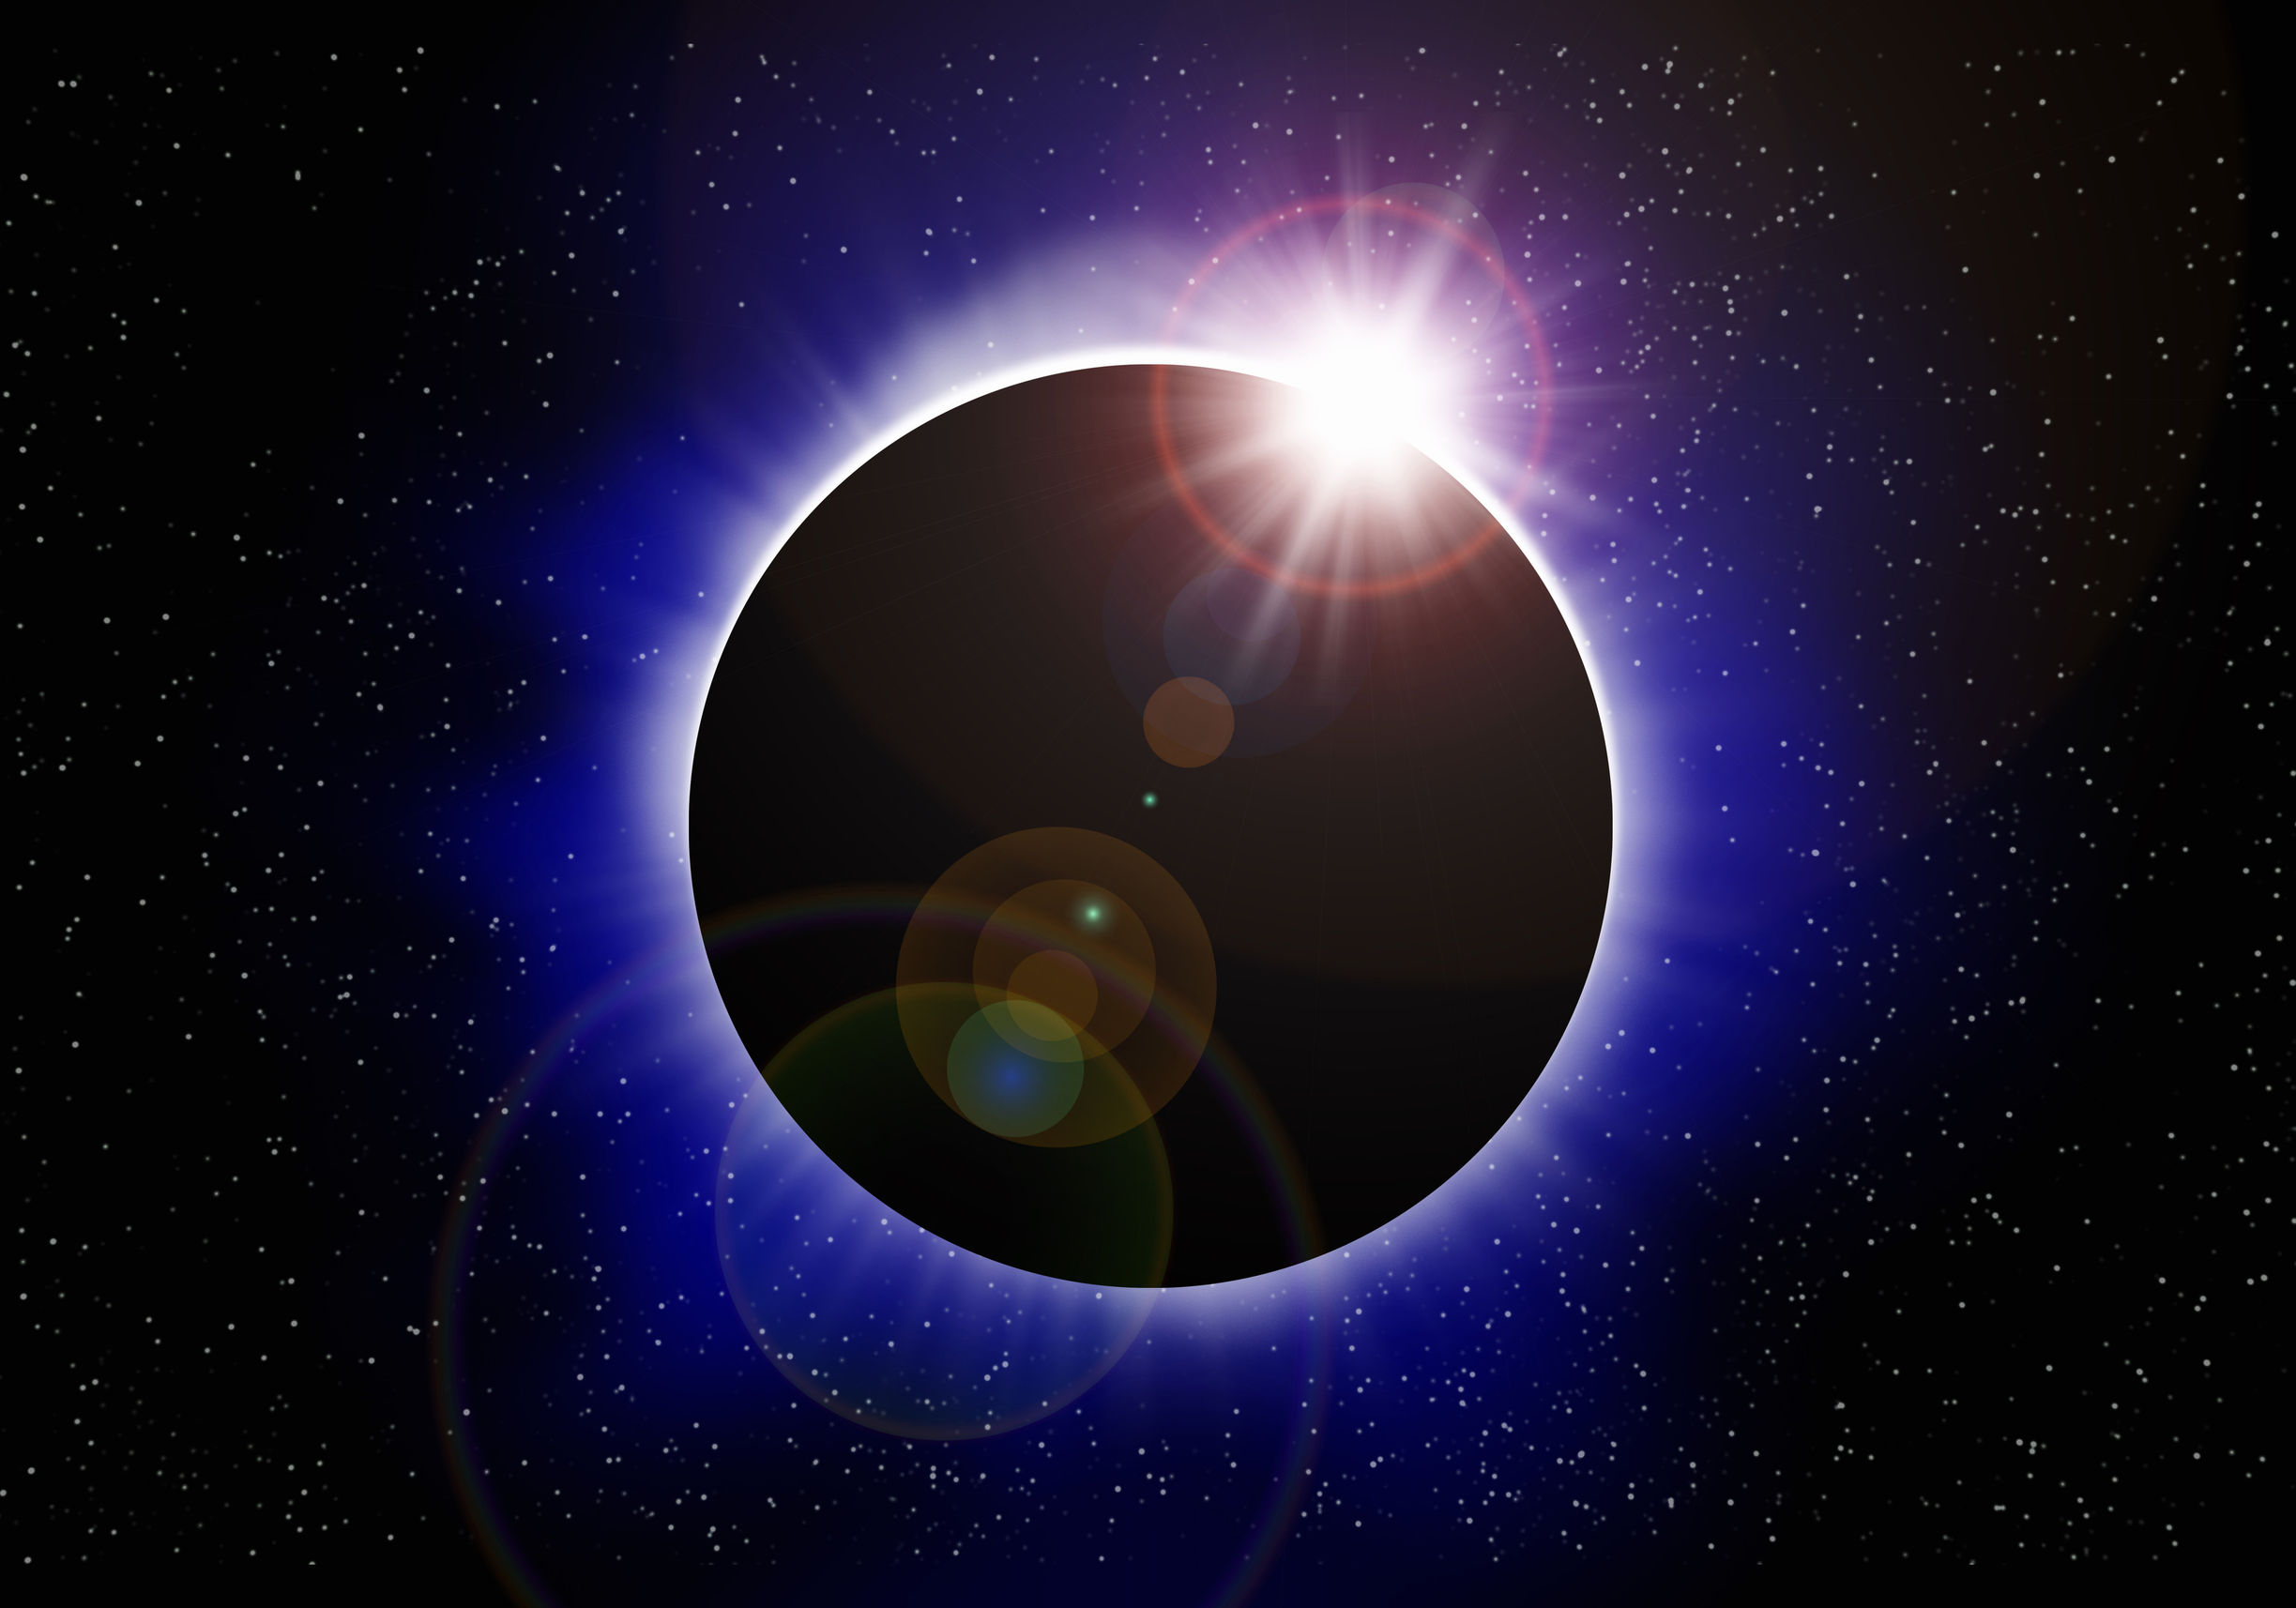 Eclipse Eclipse solar total definition science britannica singyenyang